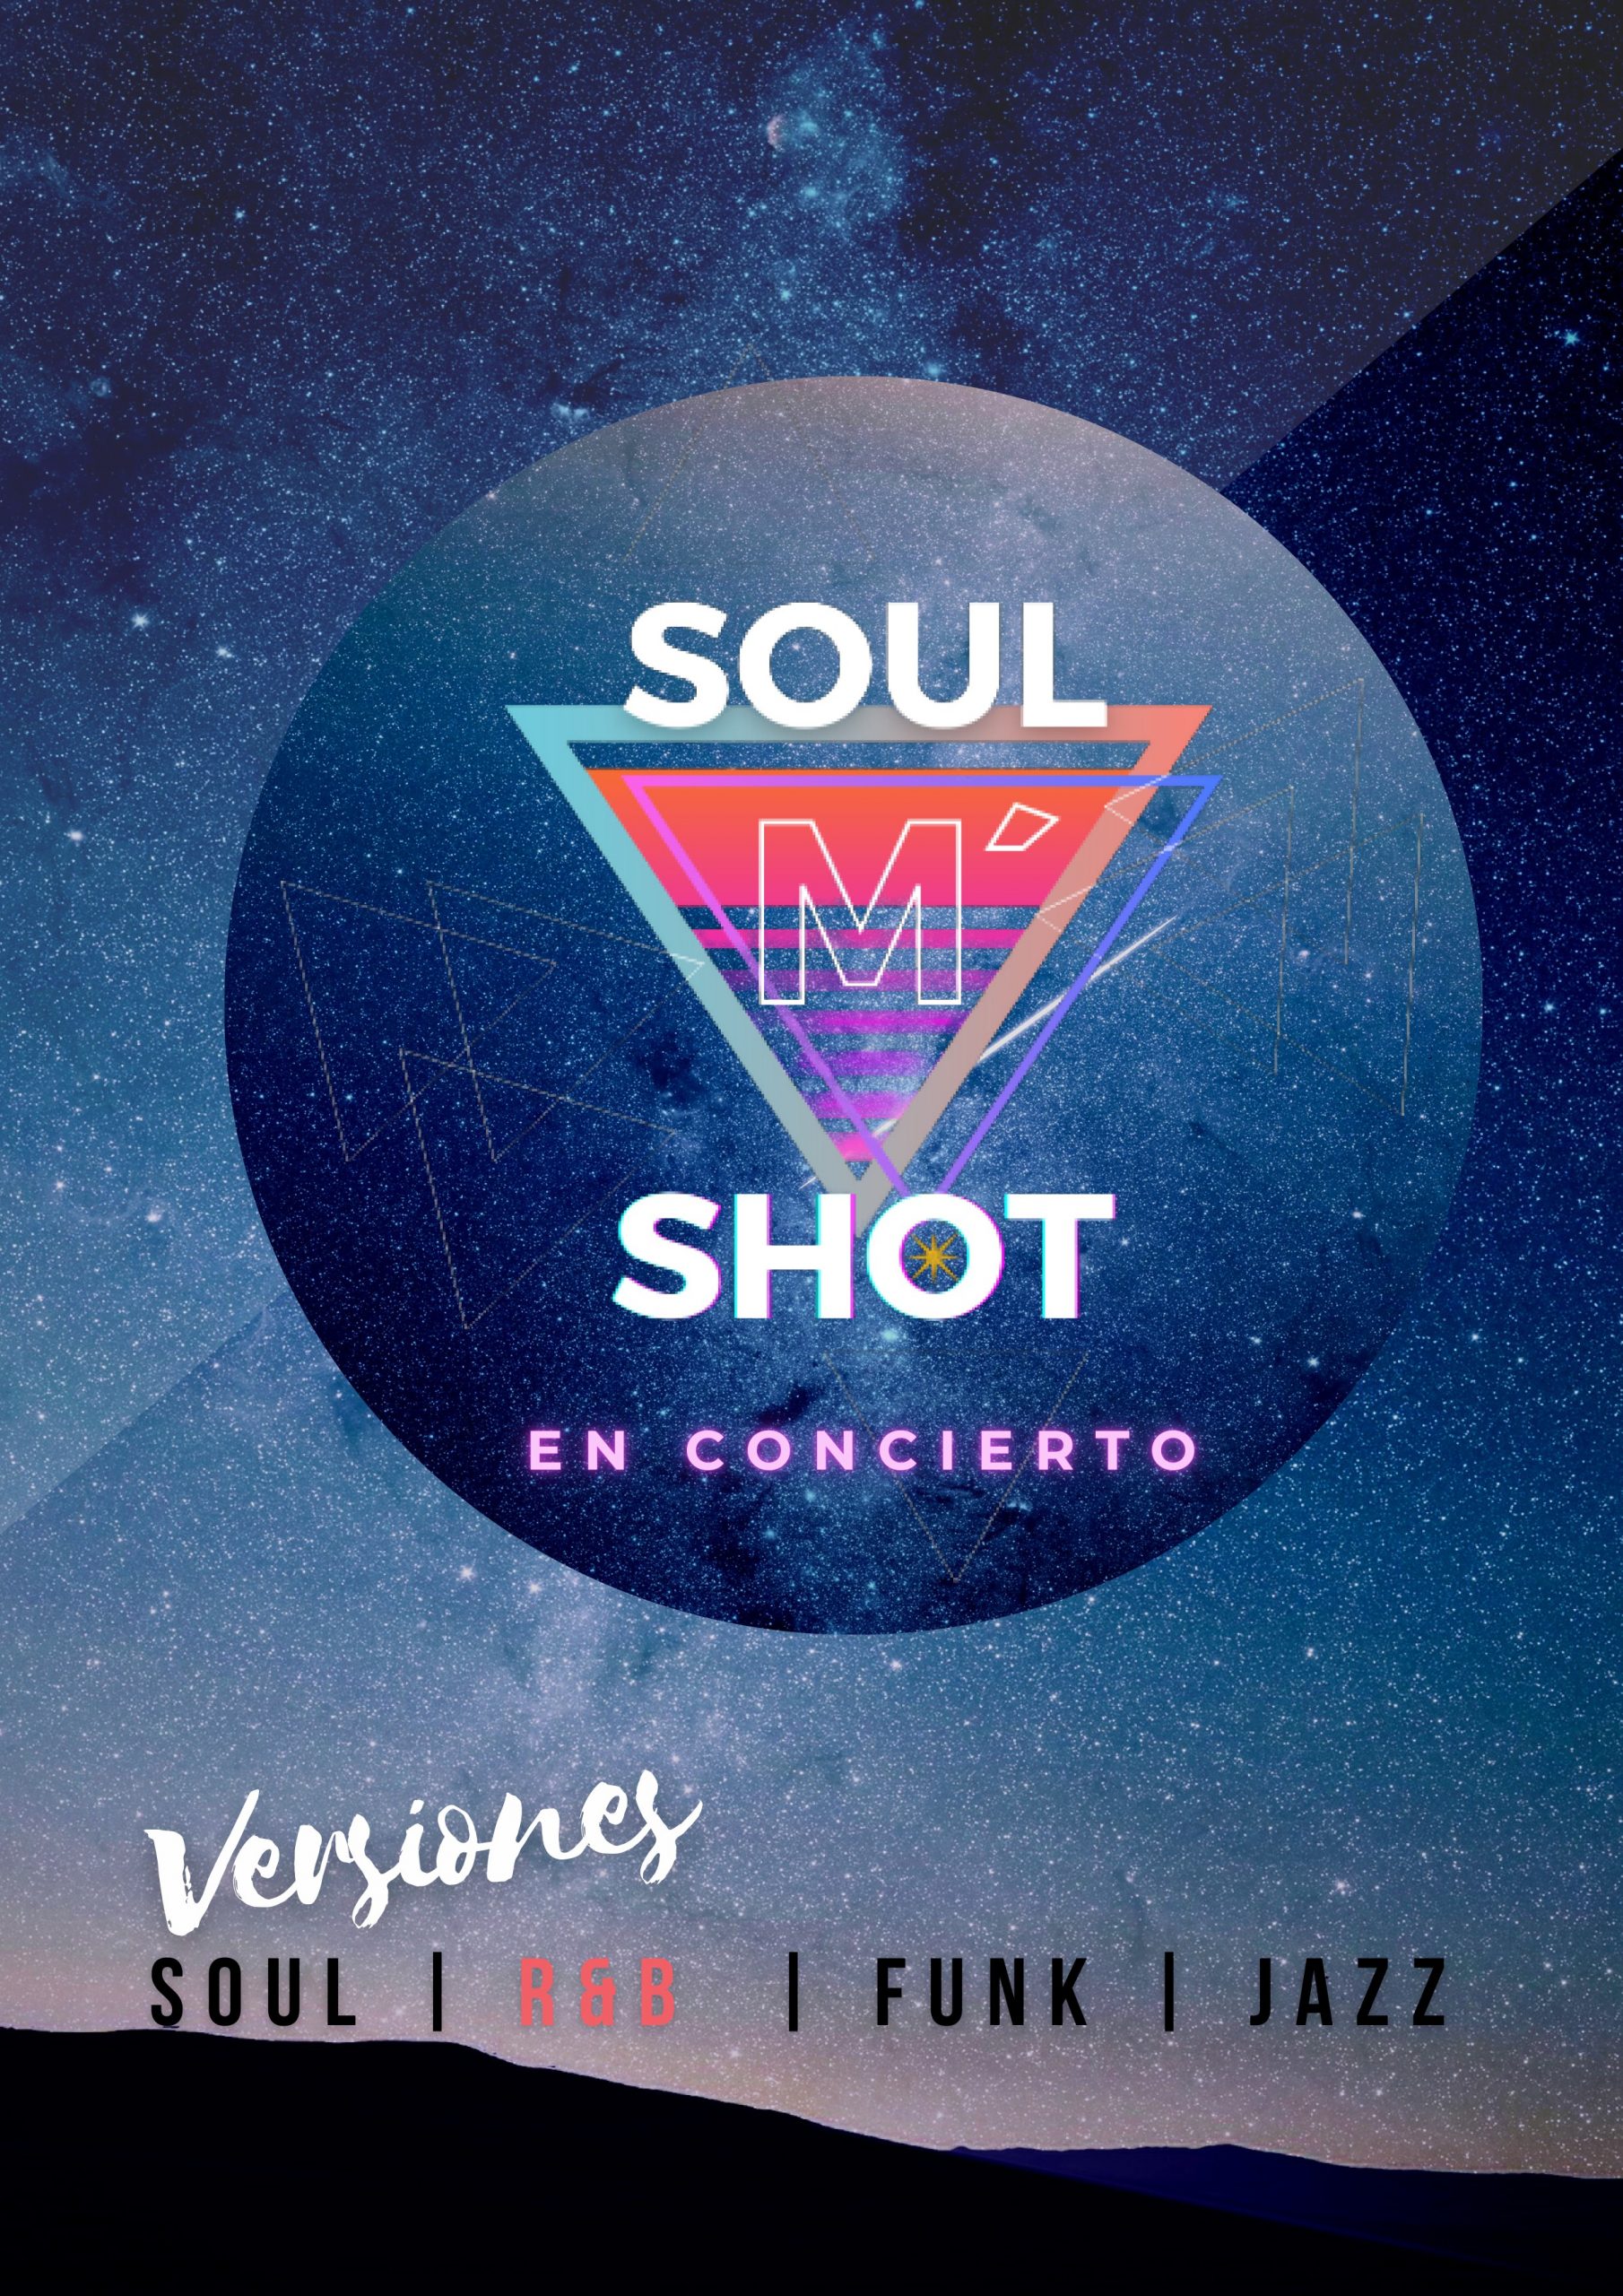 Soul M’ Shot en concierto. Zamora Inquieta. Teatro Ramos Carrión